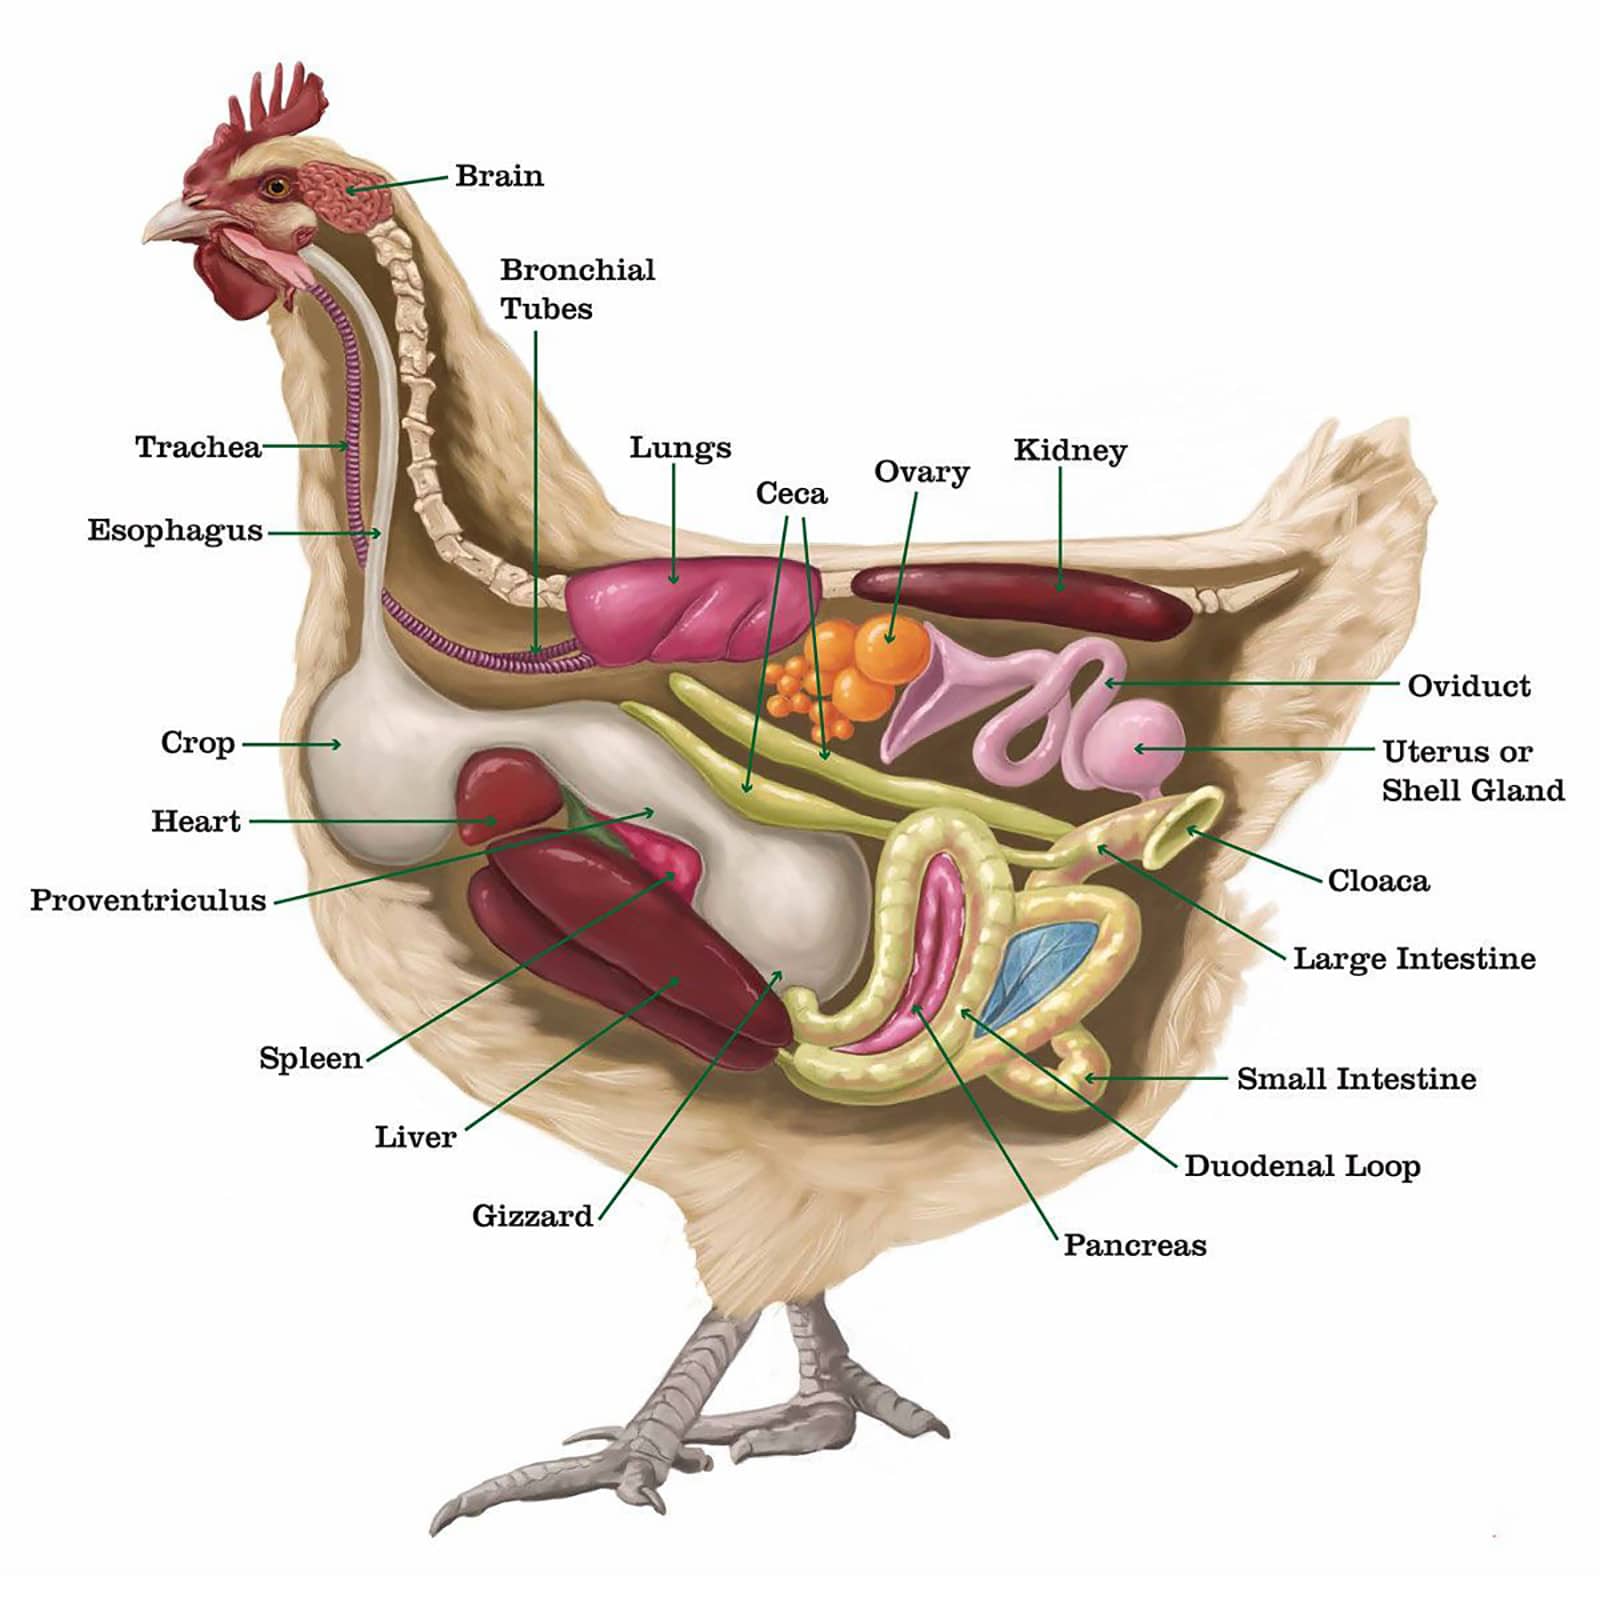 chicken anatomy